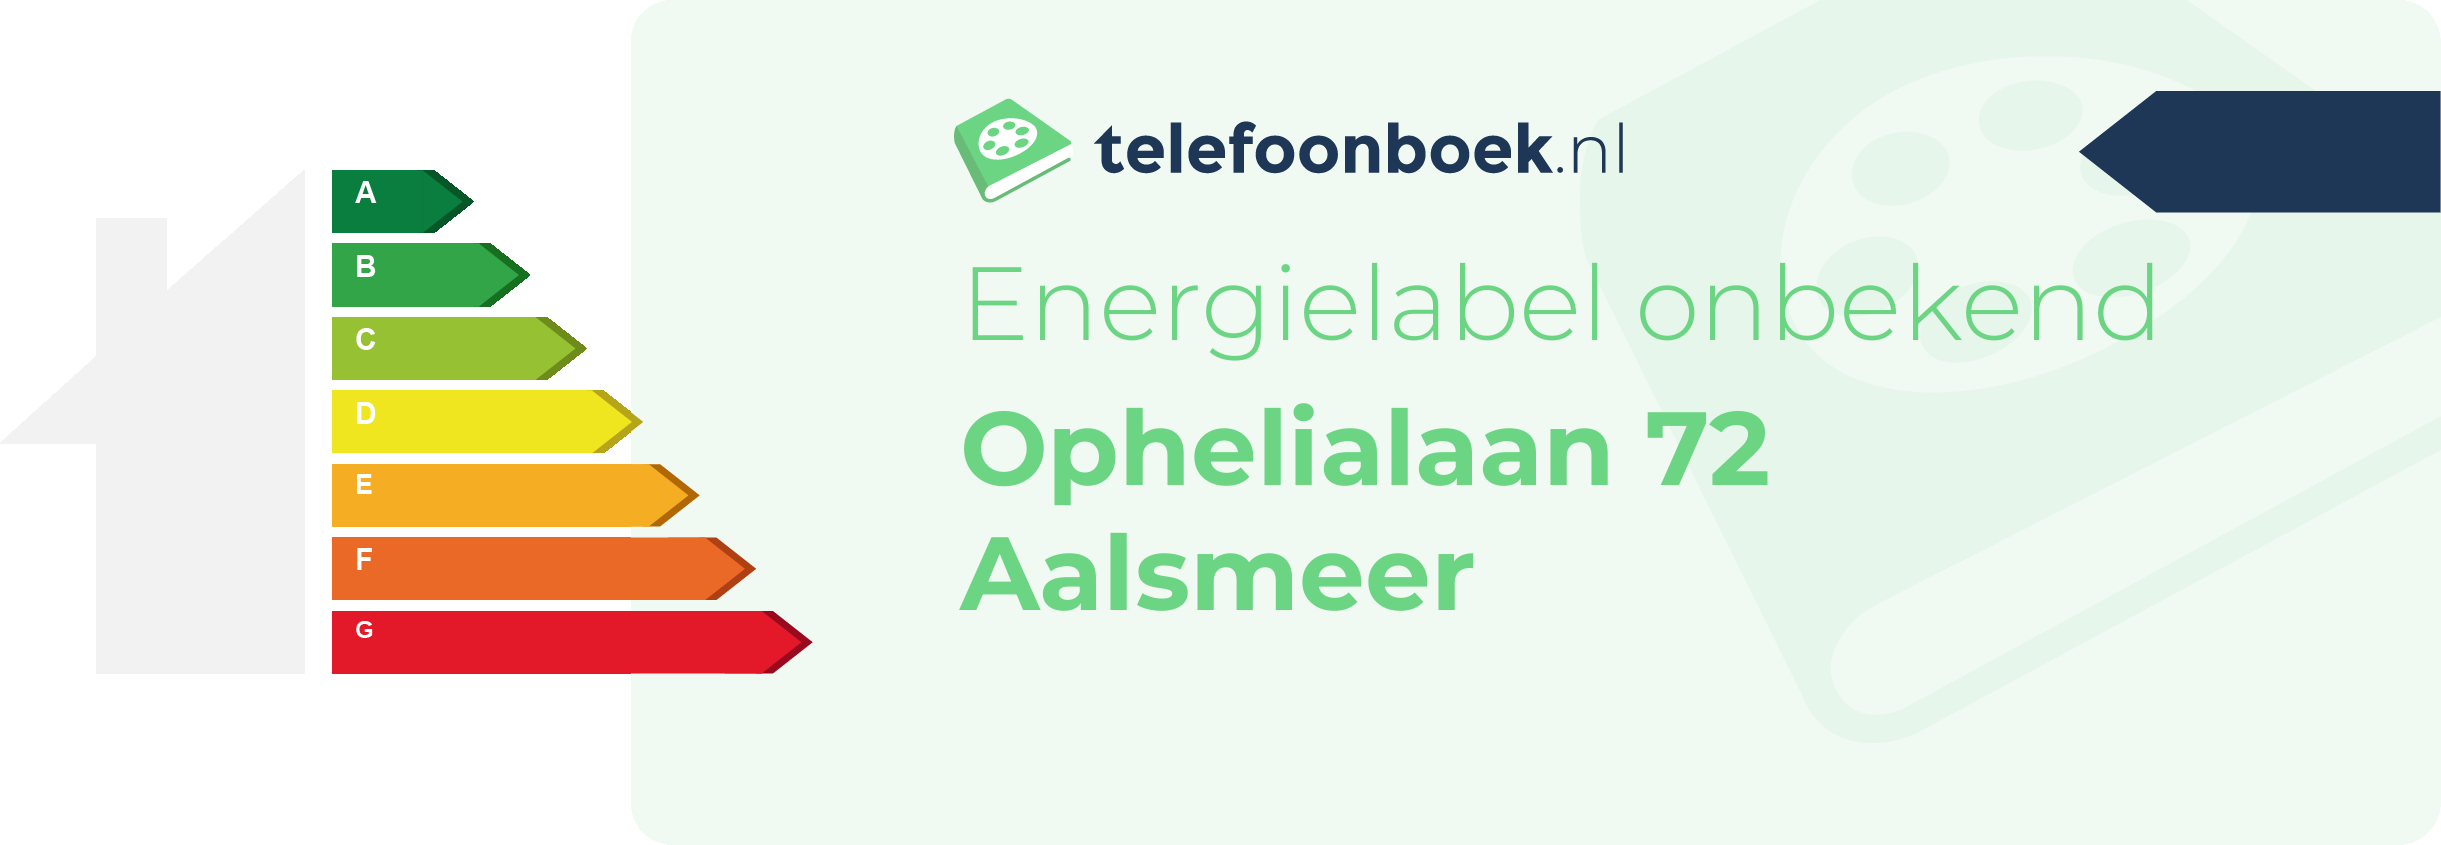 Energielabel Ophelialaan 72 Aalsmeer